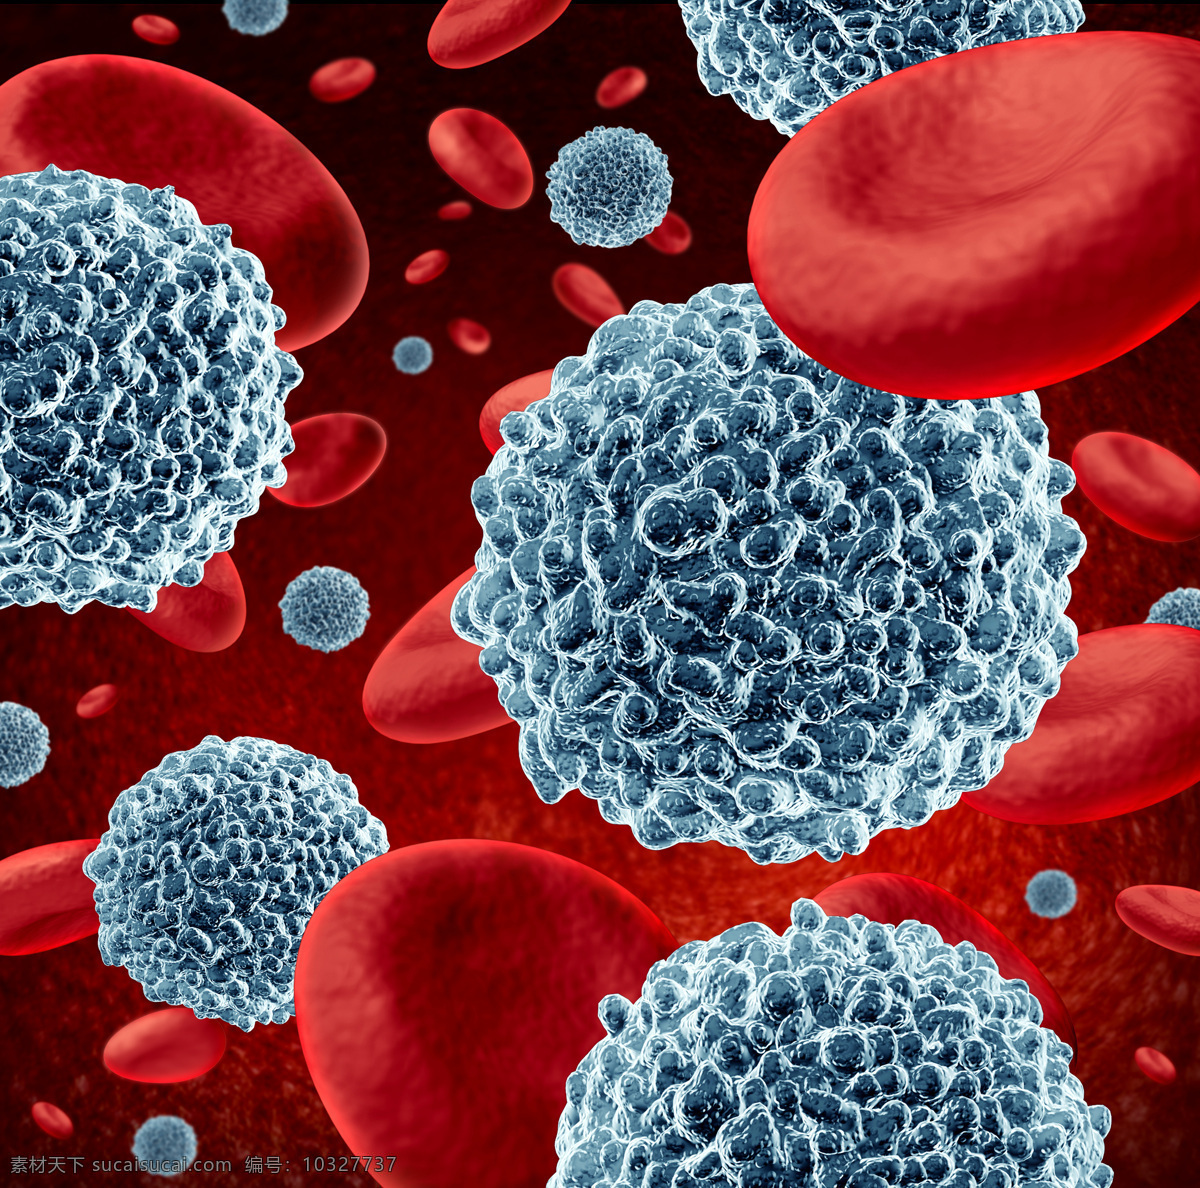 红细胞血管 生物 病毒 高清 背 红细胞 微生物 生物细胞 血管 生 物类 现代科技 科学研究